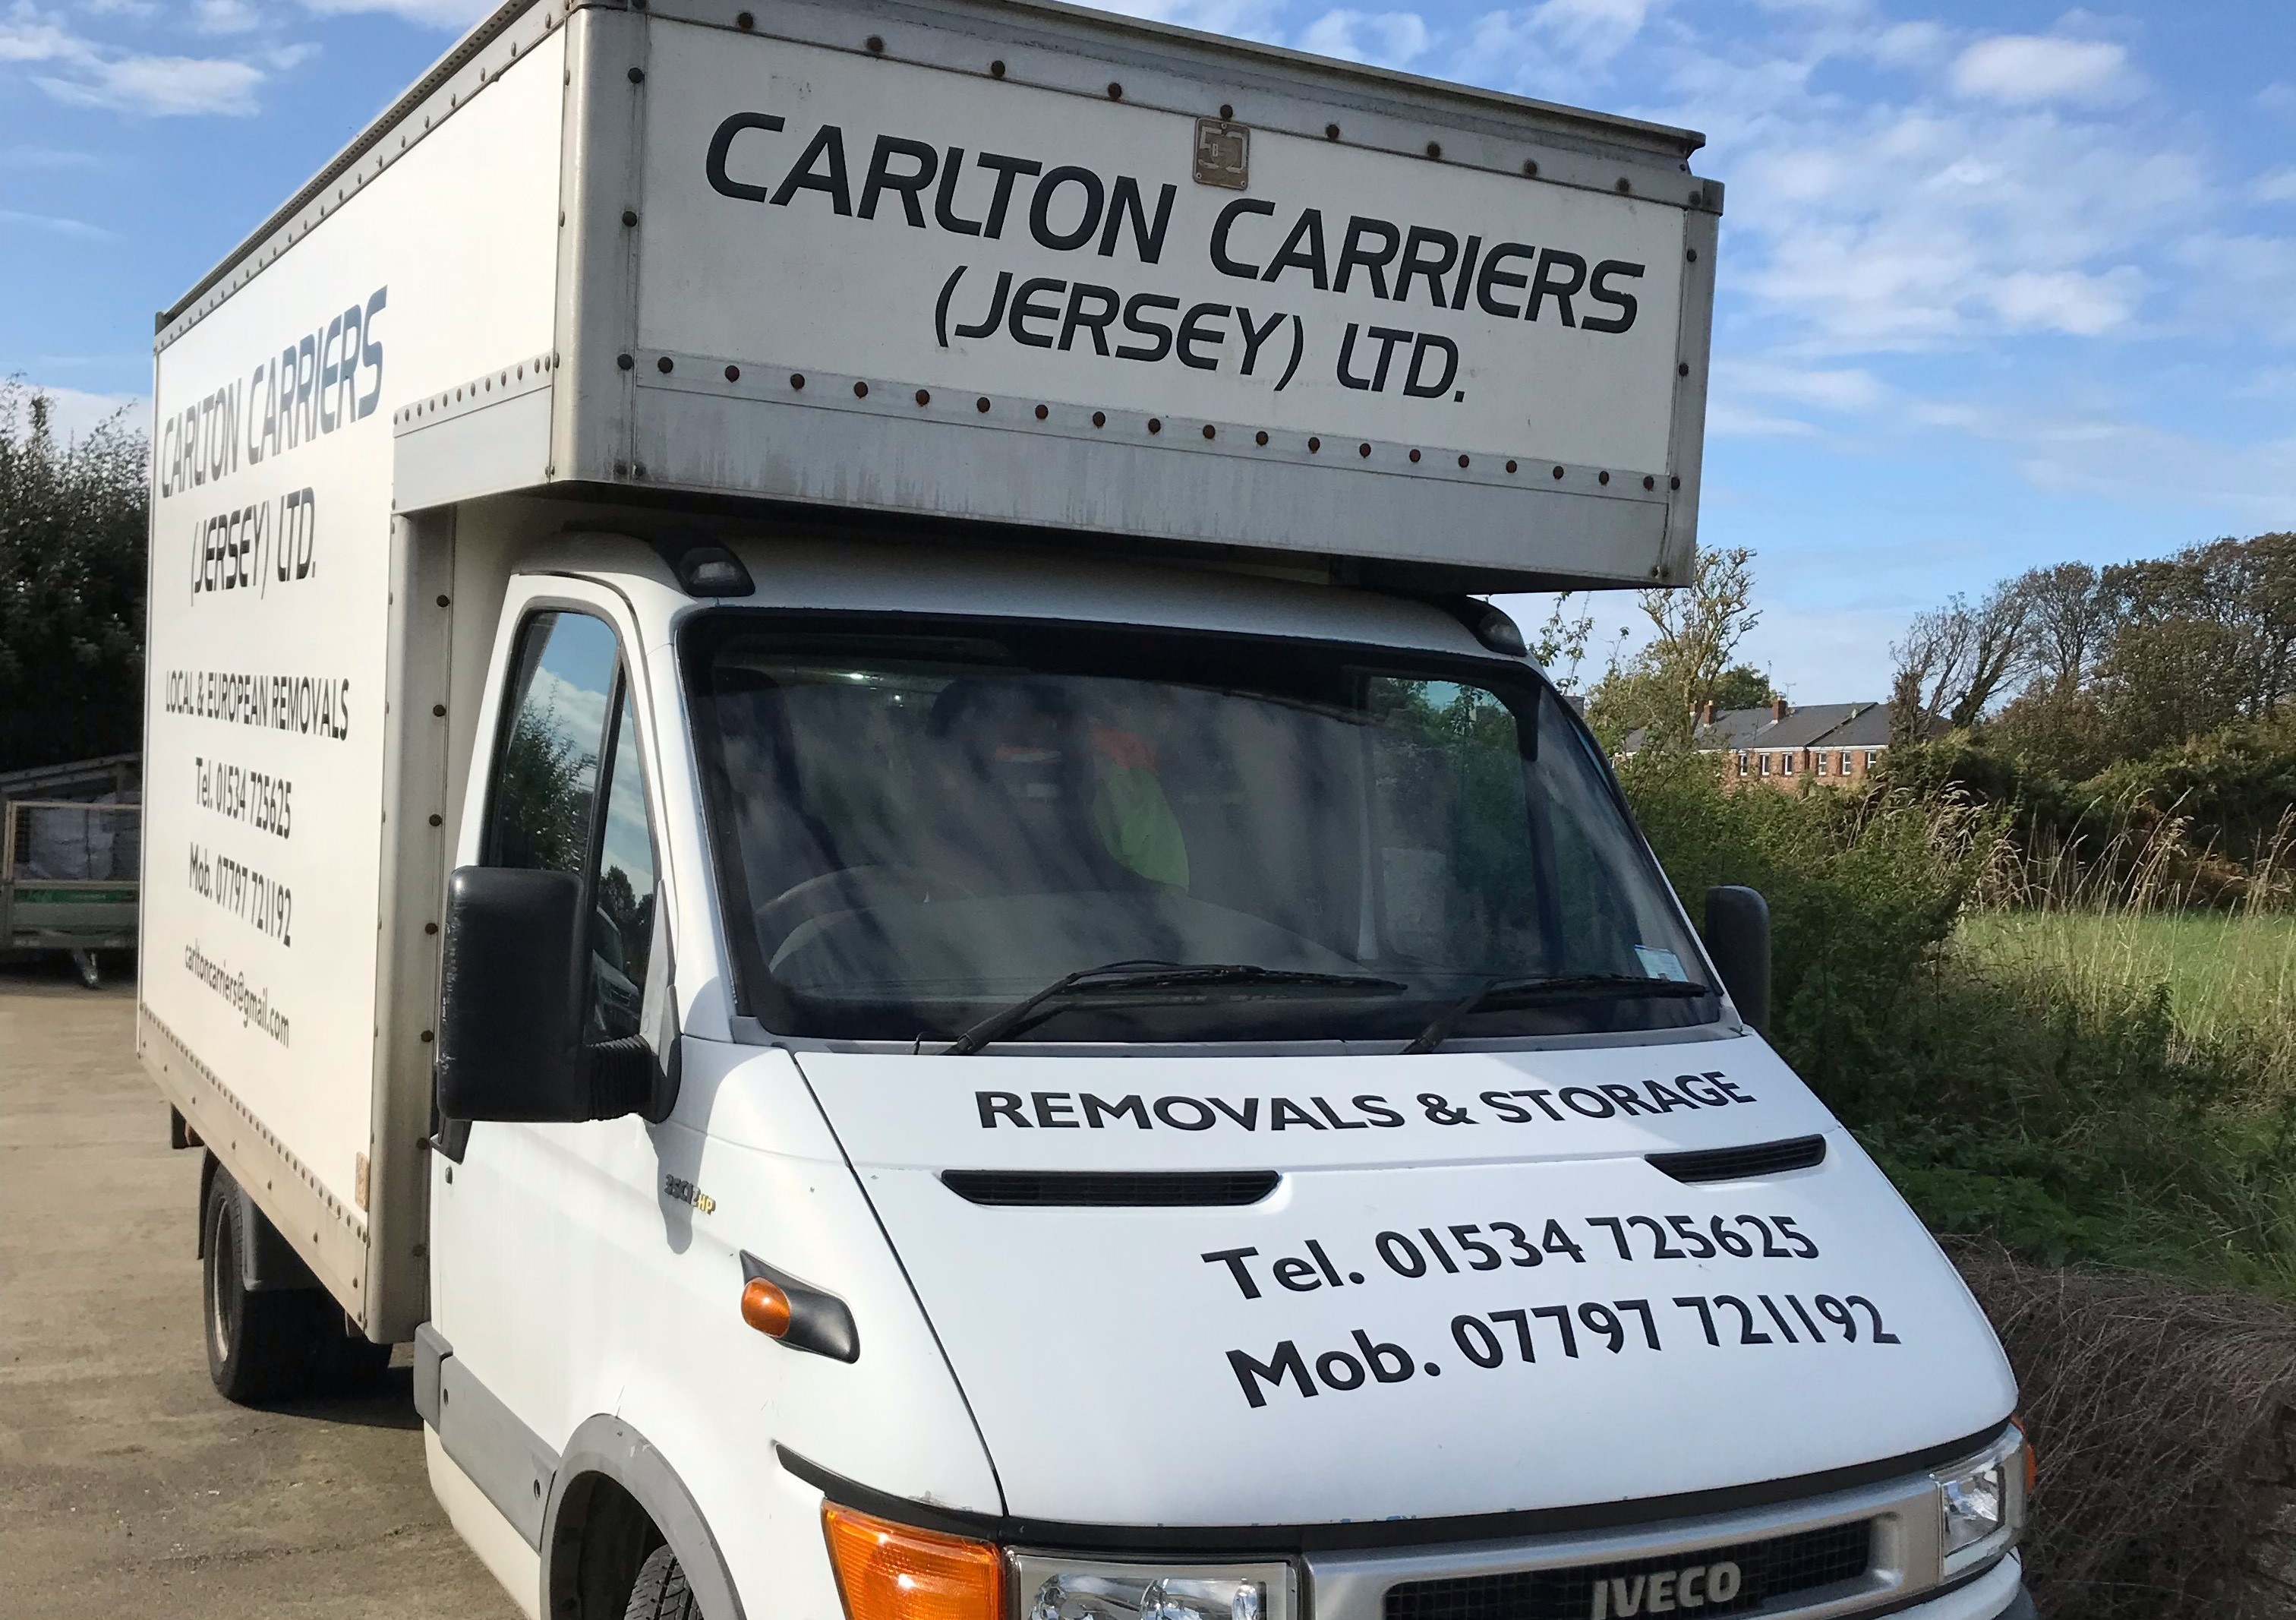 Carlton Carriers (Jersey) Ltd